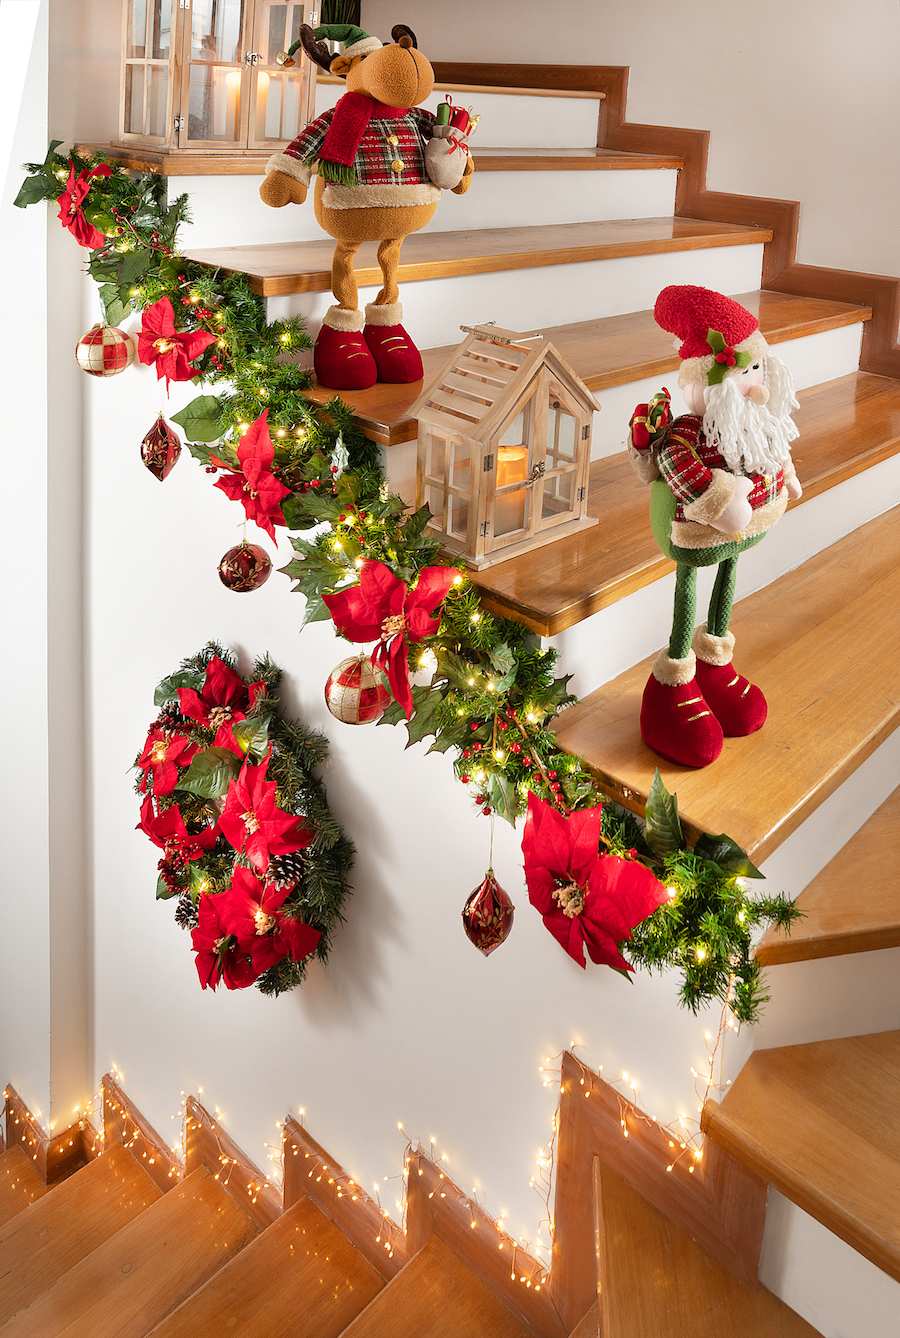 Escalera interior de una casa adornada con luces, guirnaldas y adornos navideños.